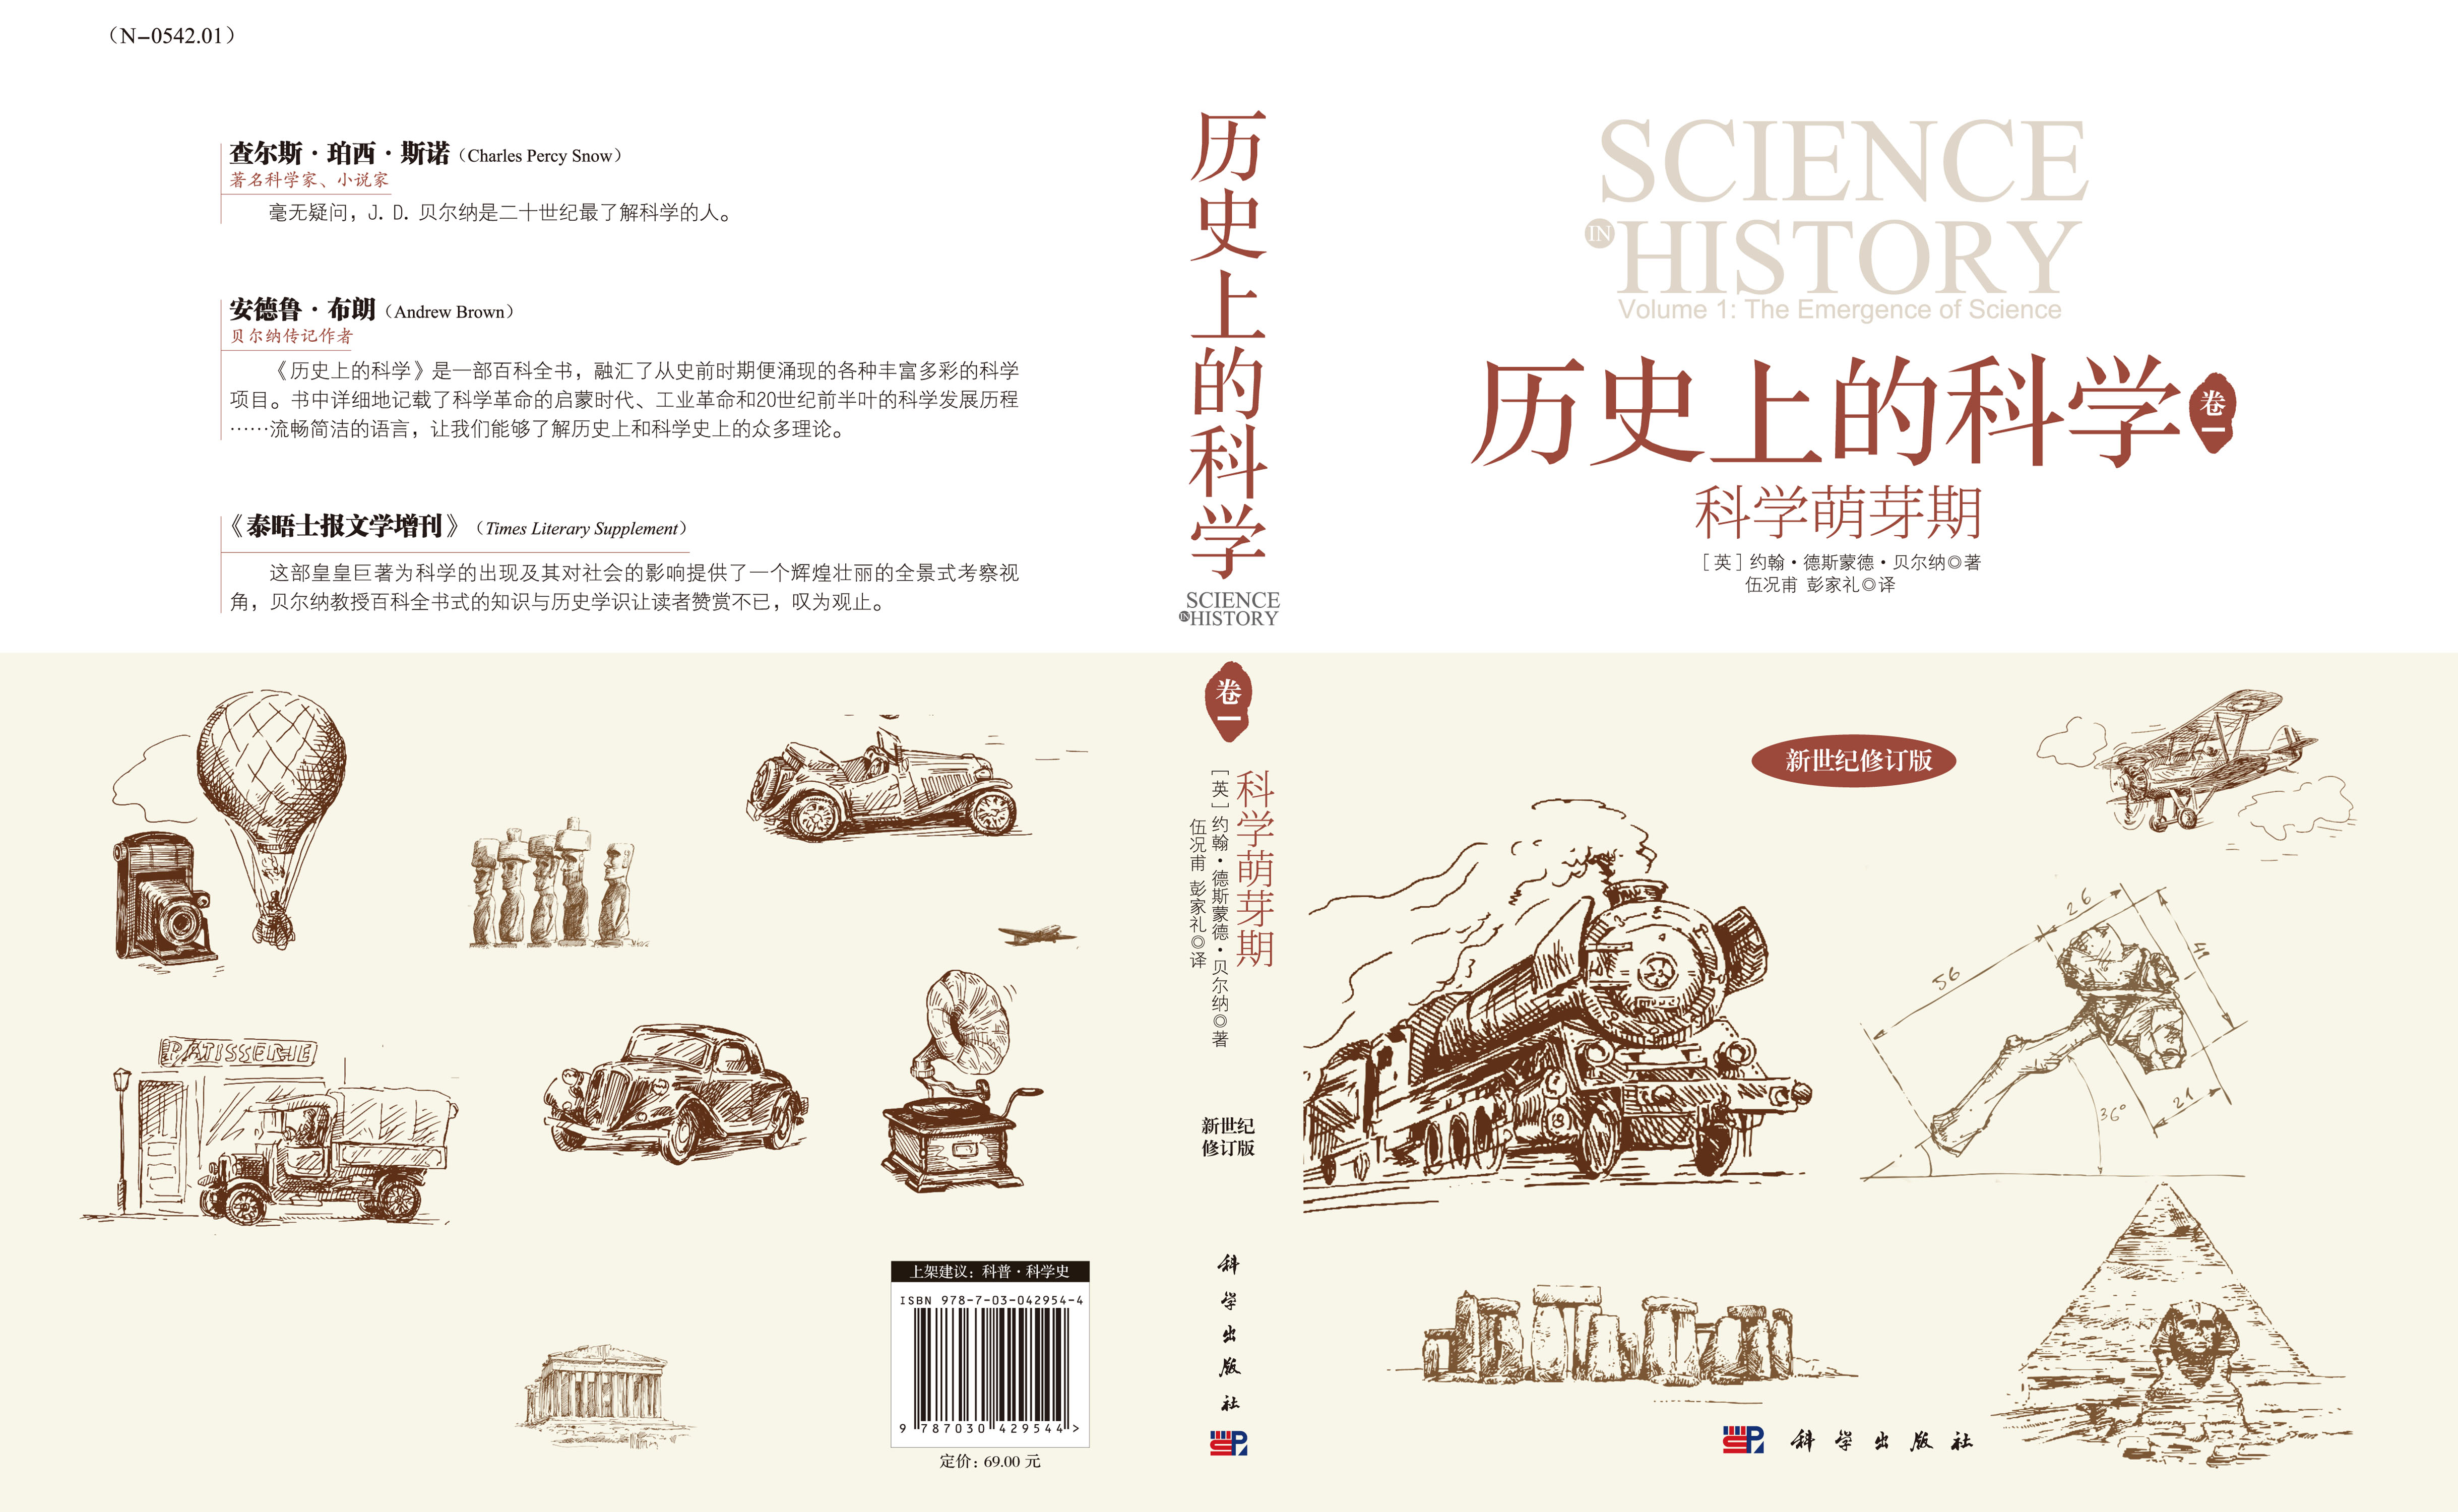 历史上的科学(卷一):科学萌芽期